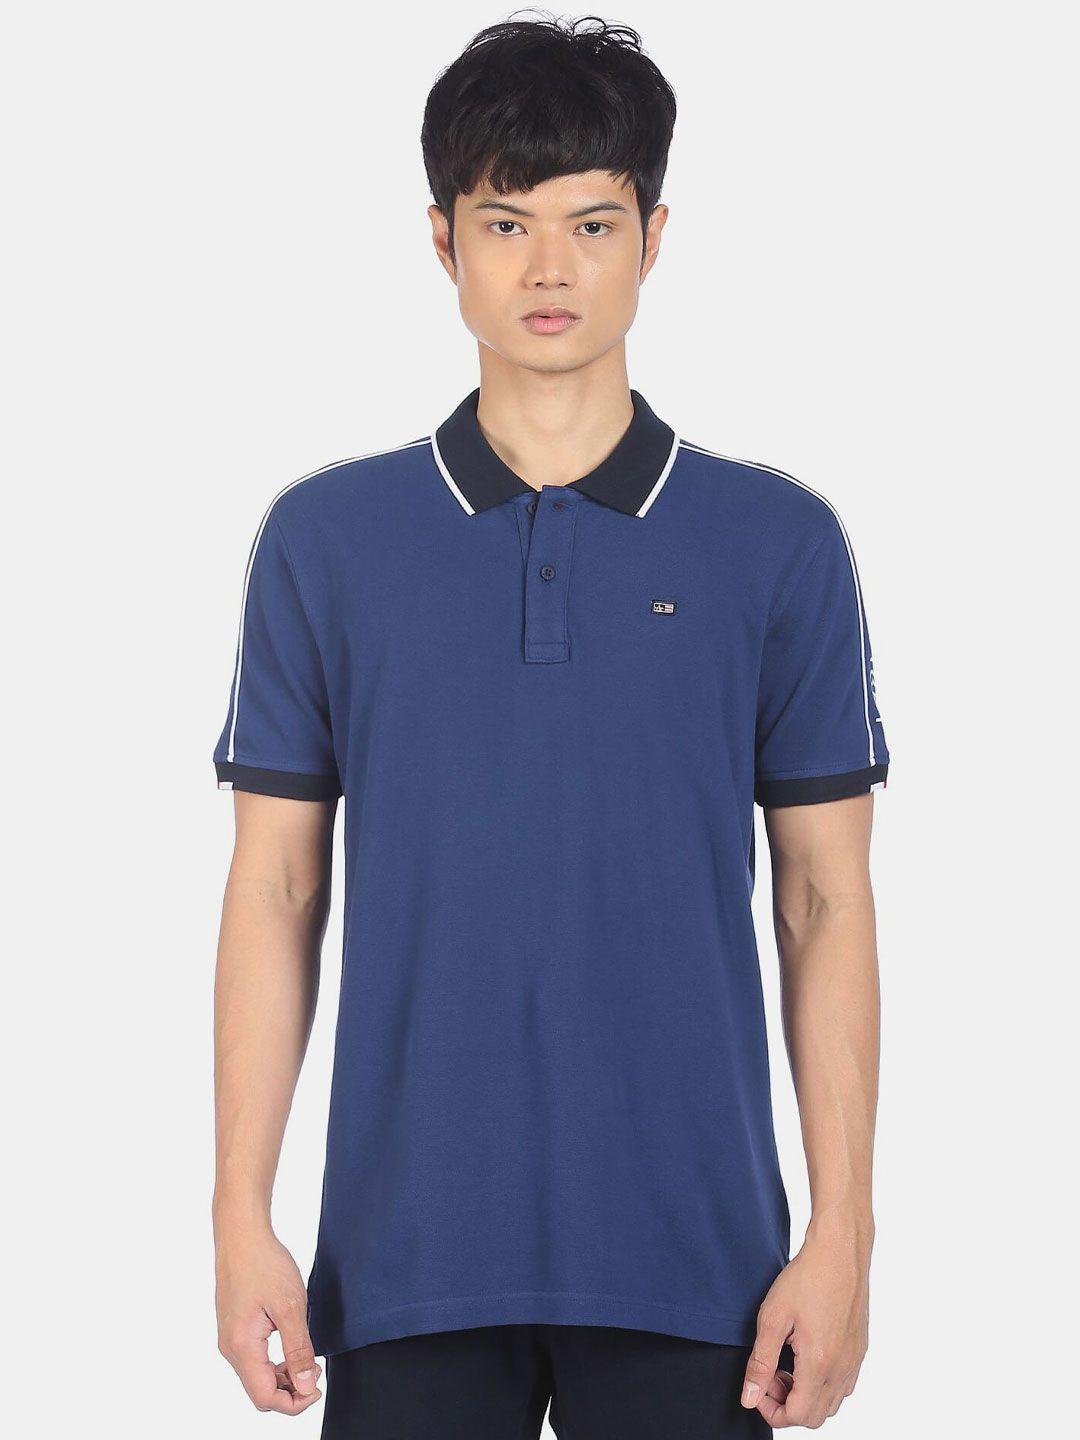 arrow men blue & black polo collar cotton t-shirt